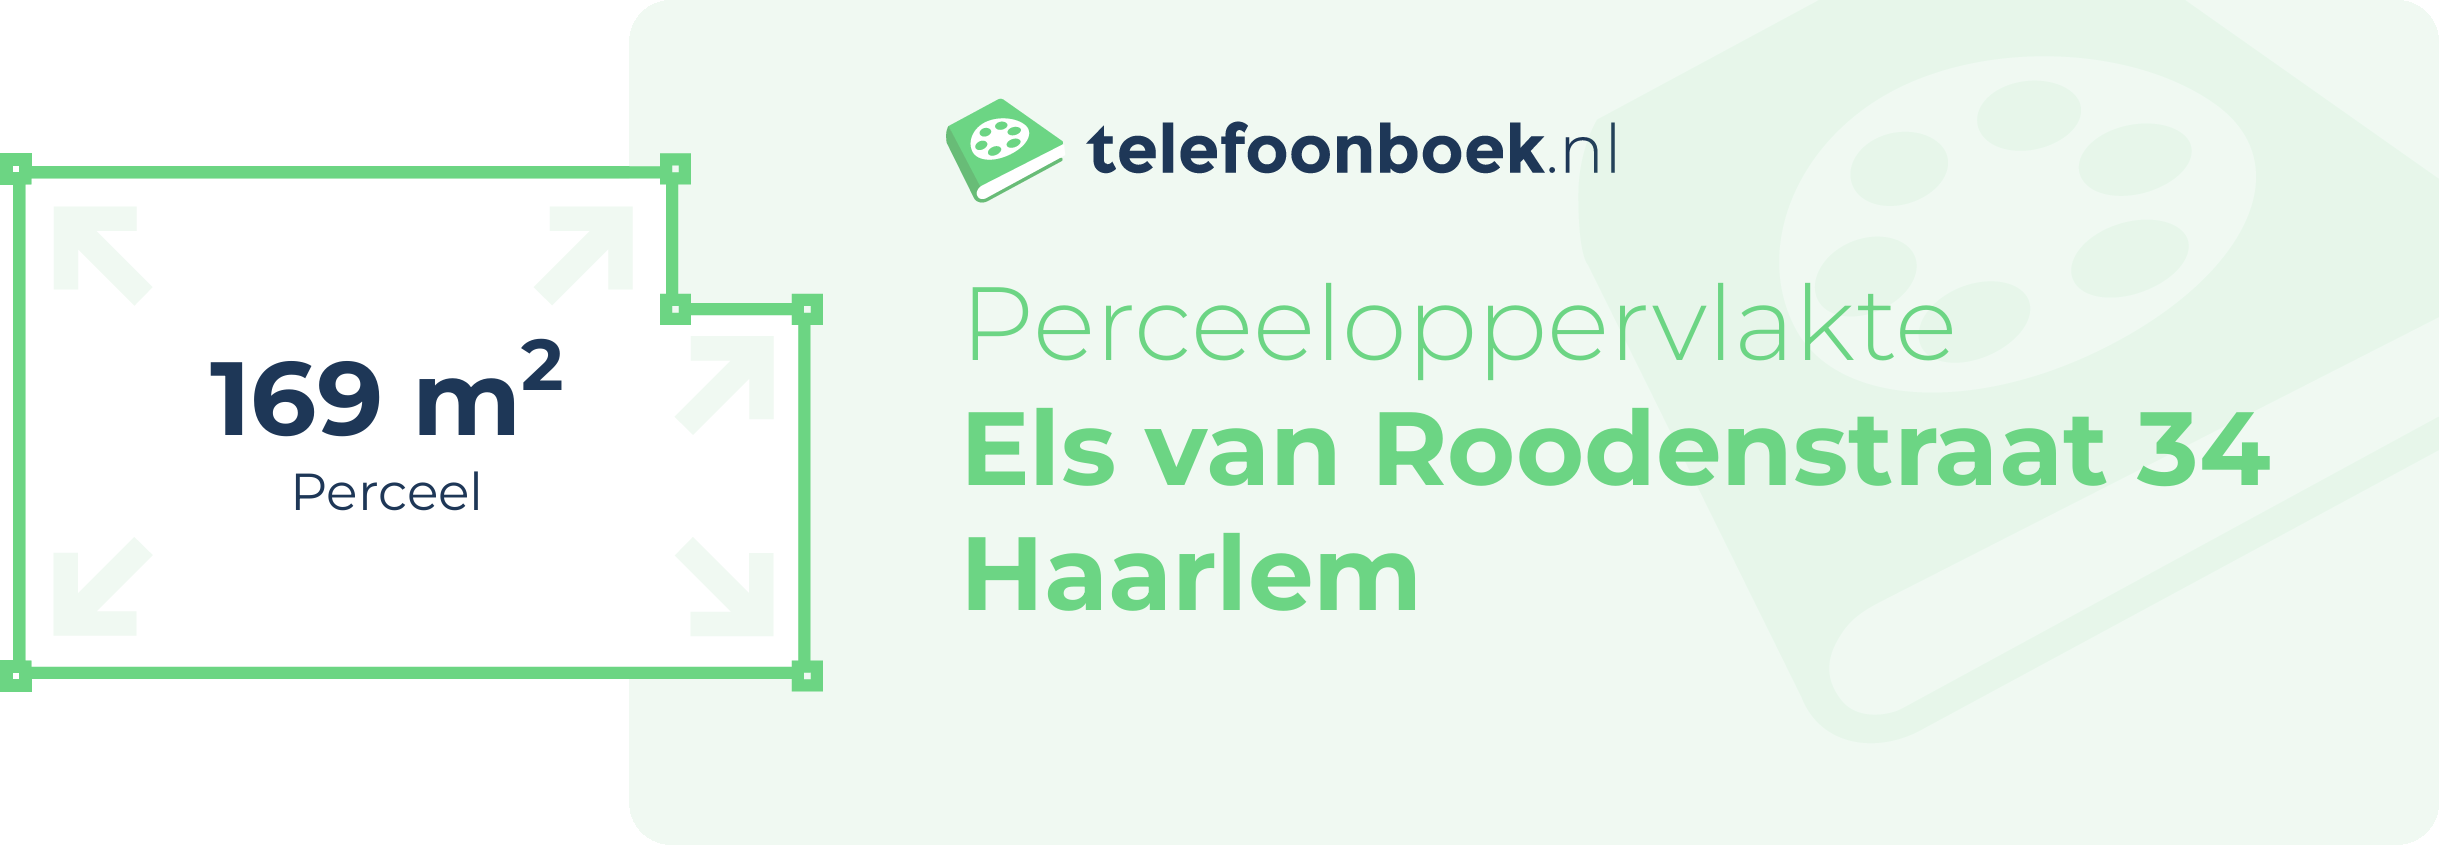 Perceeloppervlakte Els Van Roodenstraat 34 Haarlem